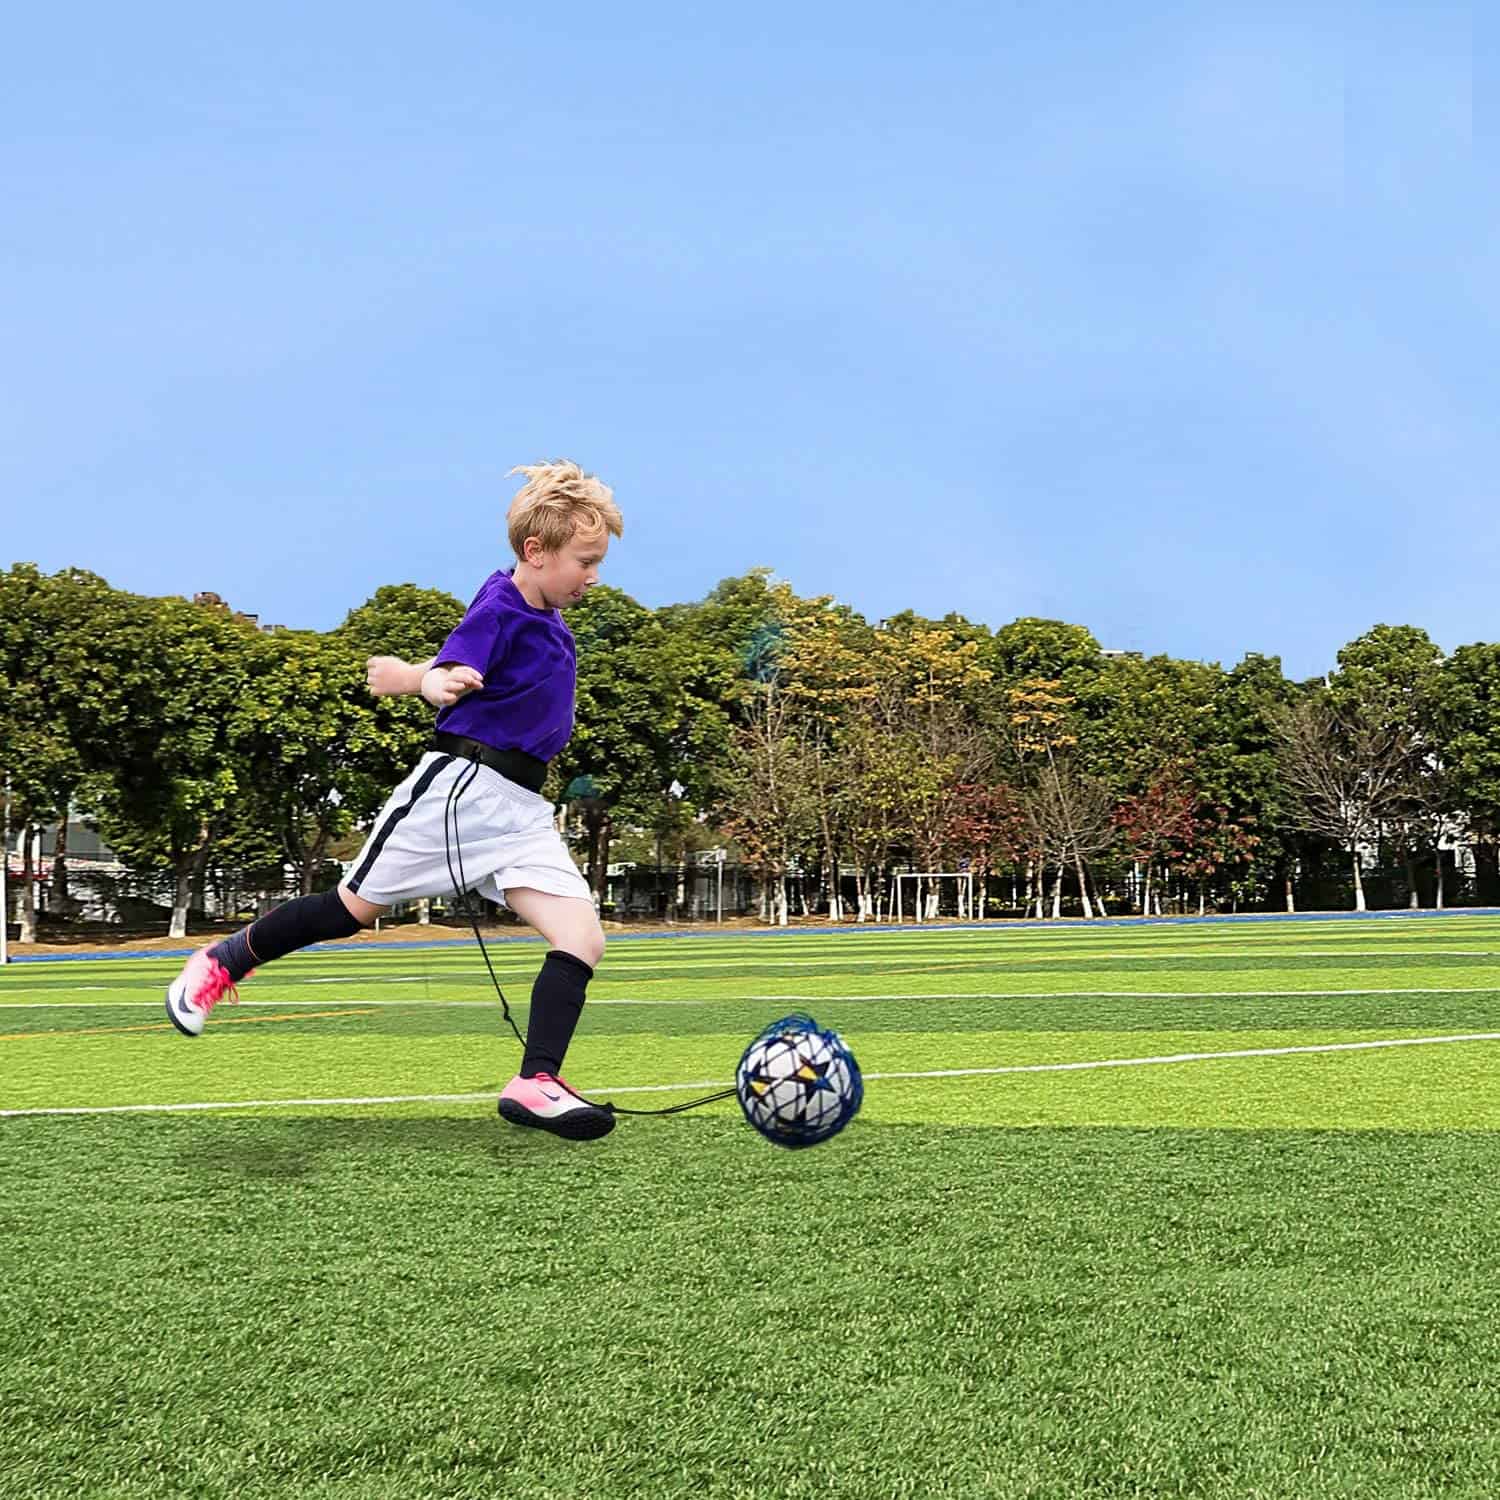 Mejor juego de deportes para niños de 11 años: Podiu Solo Football Coach